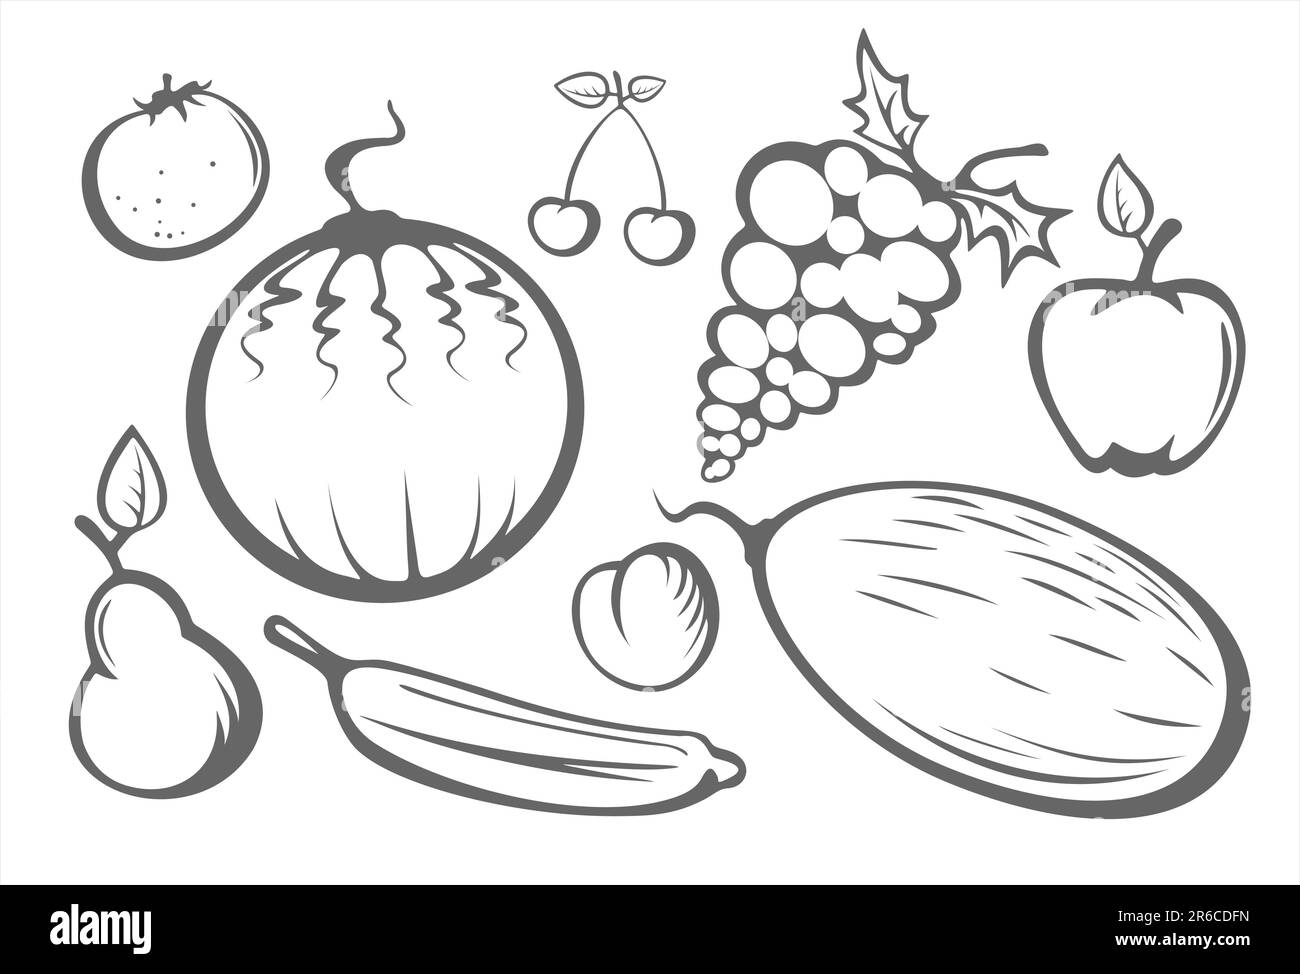 La pomme stylisée, pêche, orange, poire, pastèque, melon, prune, cerise et raisin stylisés sur fond blanc. Illustration de Vecteur